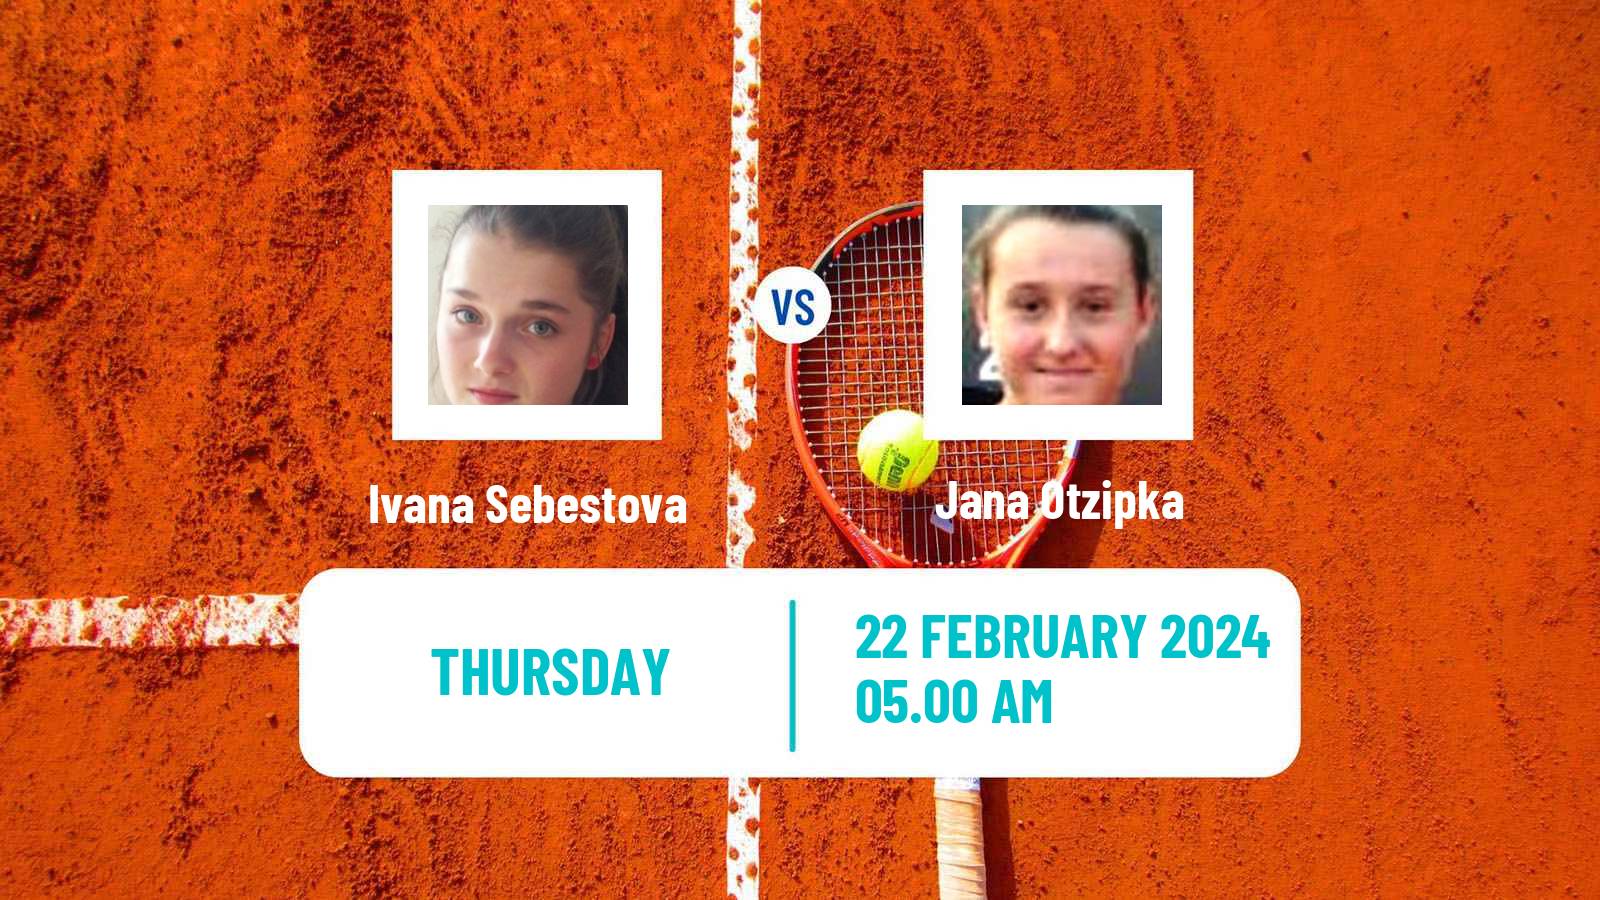 Tennis ITF W15 Manacor 2 Women Ivana Sebestova - Jana Otzipka